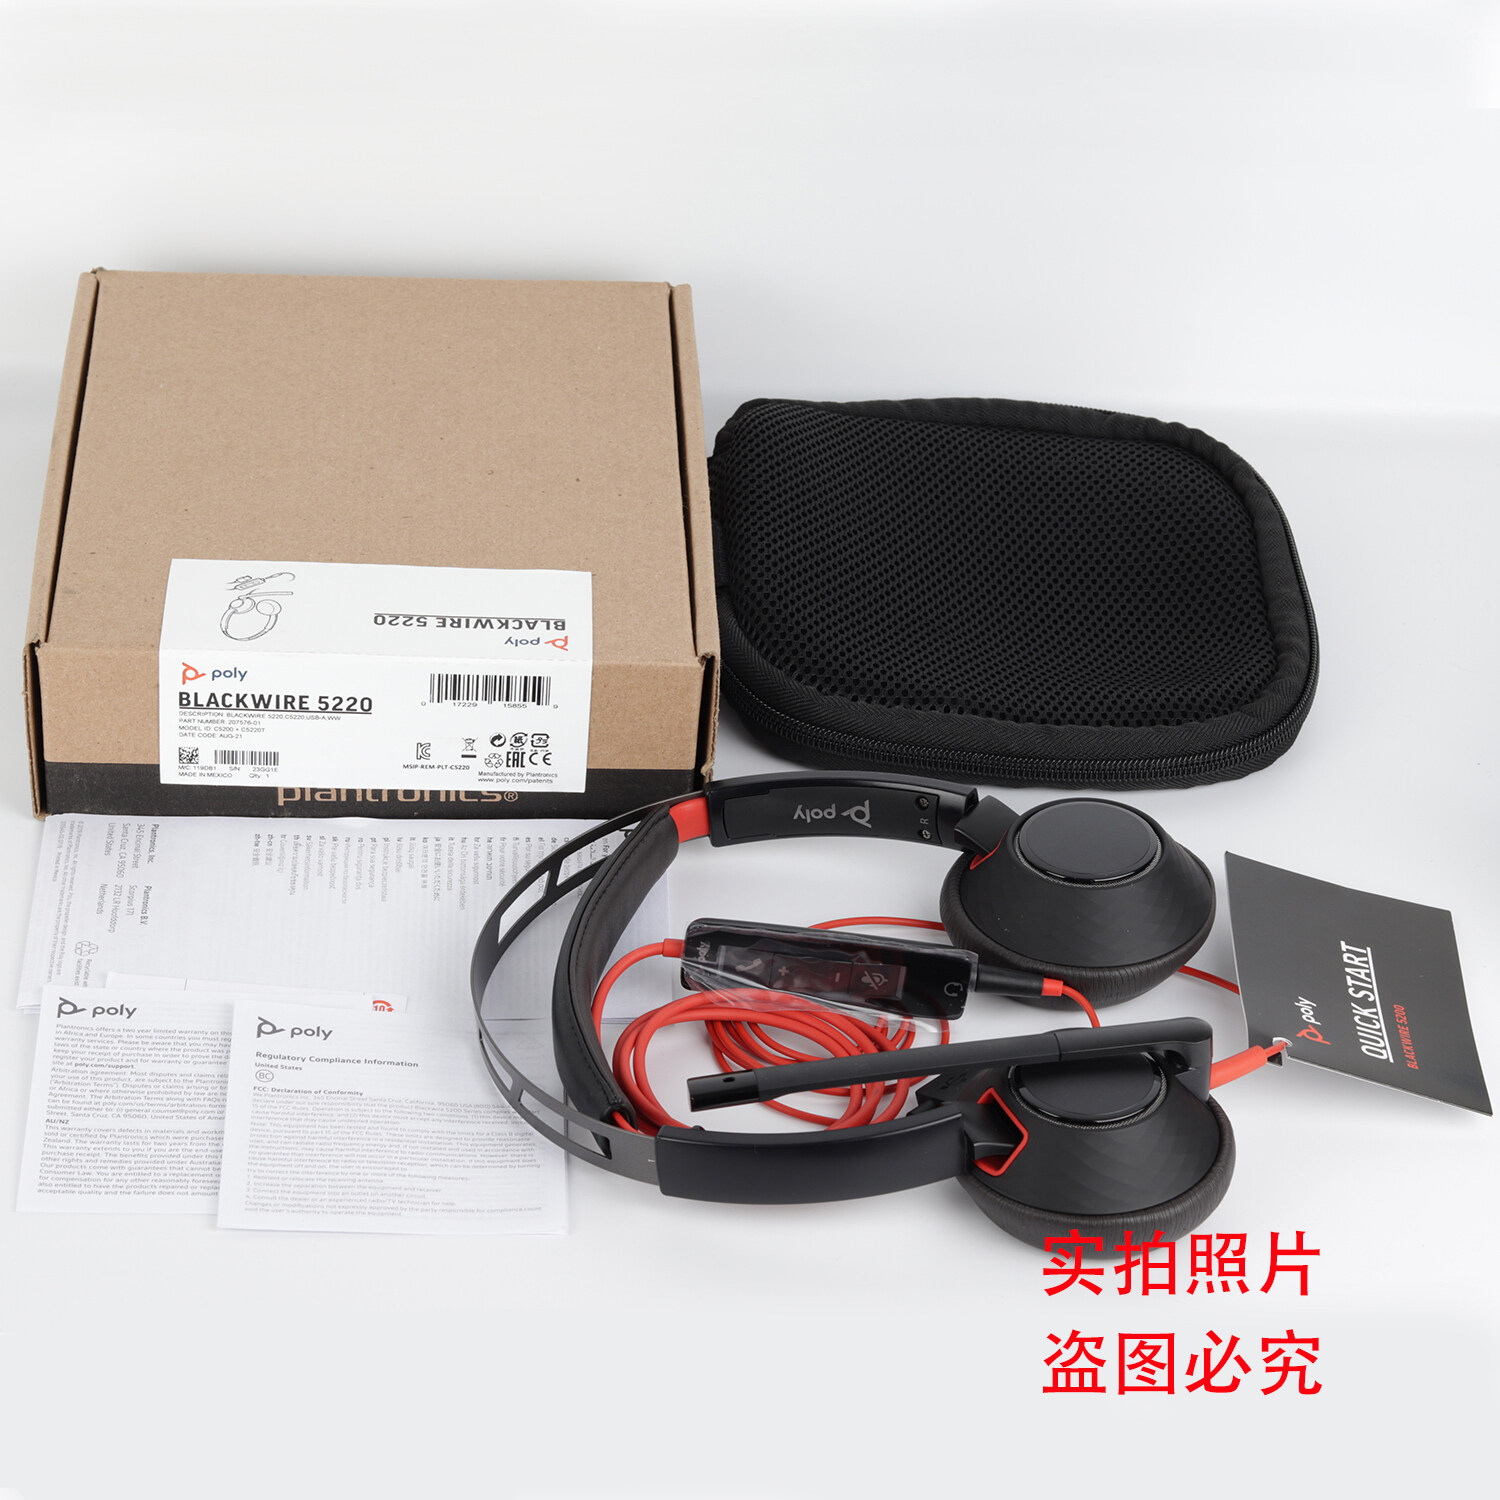 Poly Blackwire C3220(両耳タイプ、USB-A対応)P N:209745-201 PPBKW-C3220UA